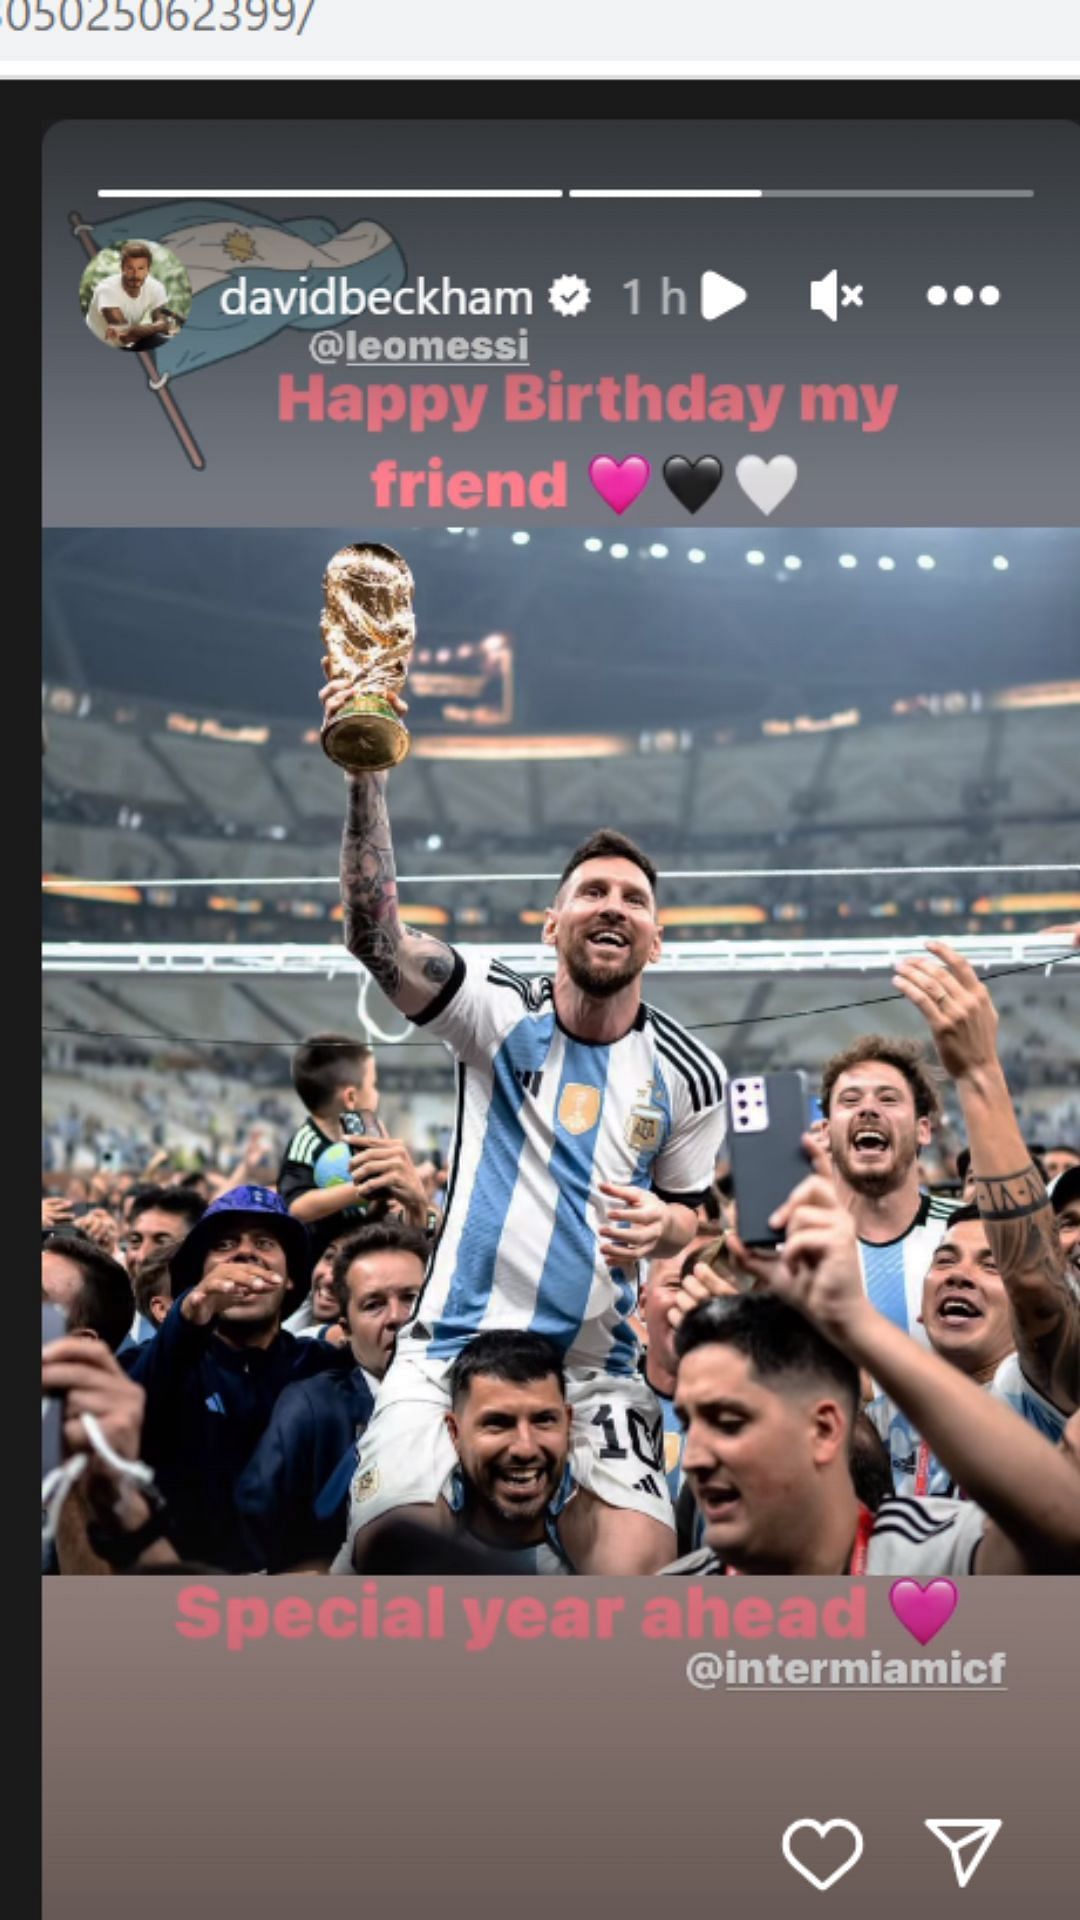 David Beckham sent Lionel Messi a birthday wish